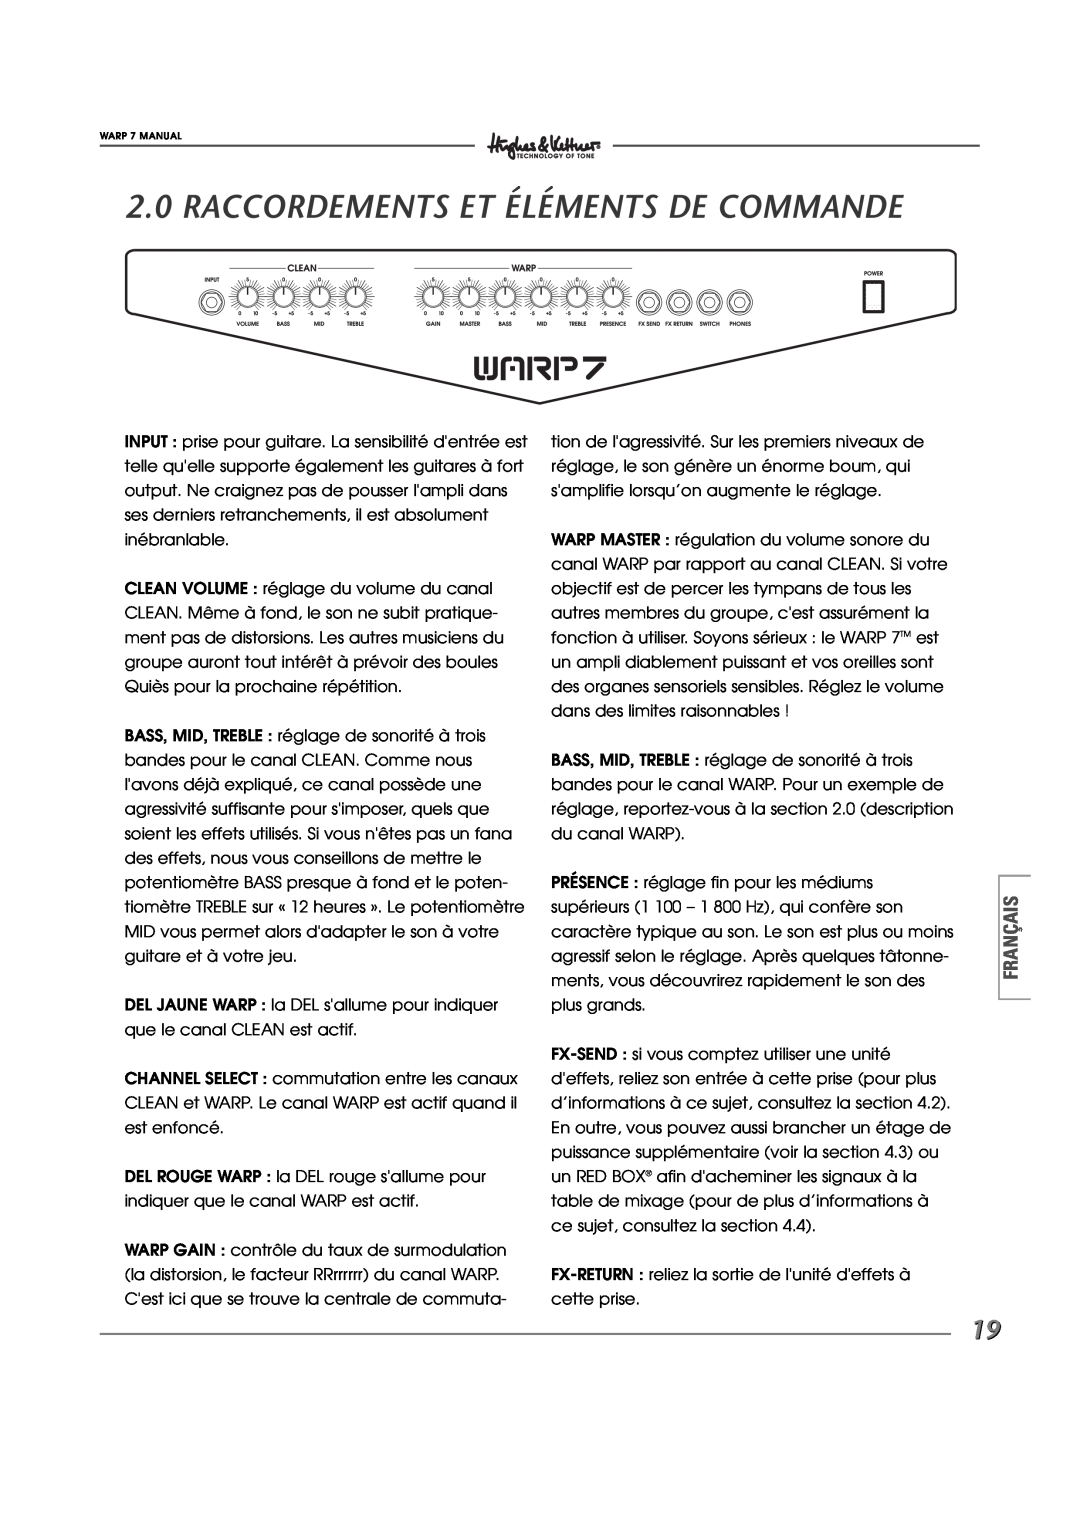 Hughes WARP7 manual Raccordements Et Éléments De Commande, Français 